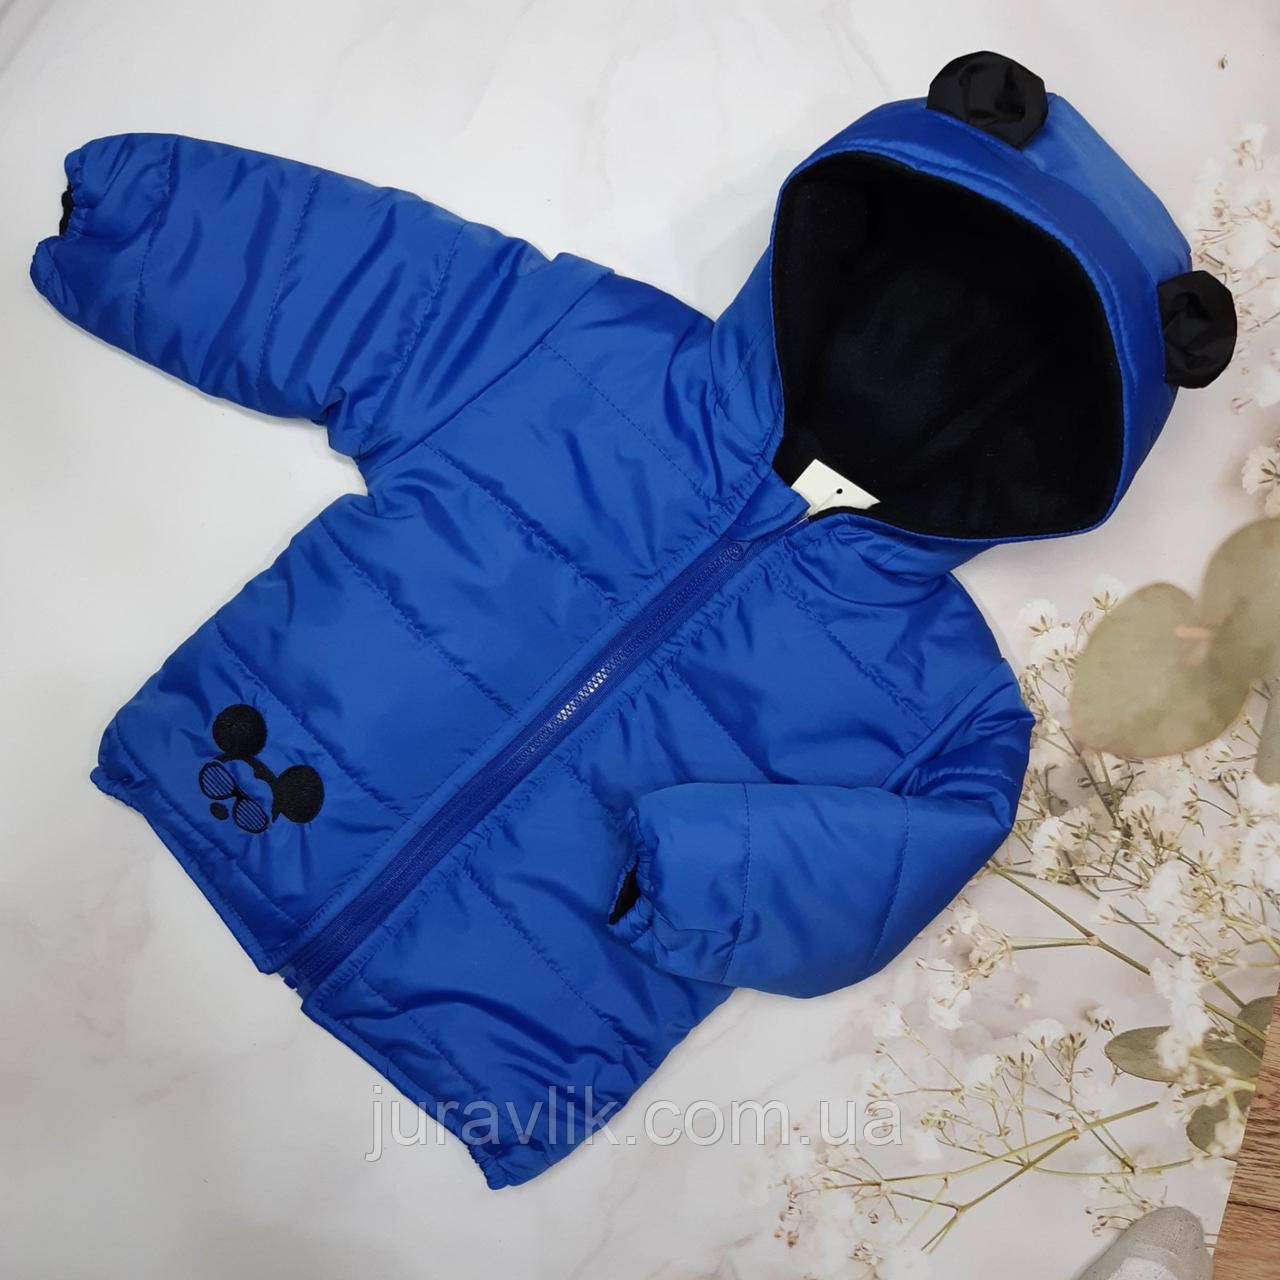 Дитяча демісезонна куртка на хлопчика 80р Синя (74,80,86,92рр) Куртка для хлопчика